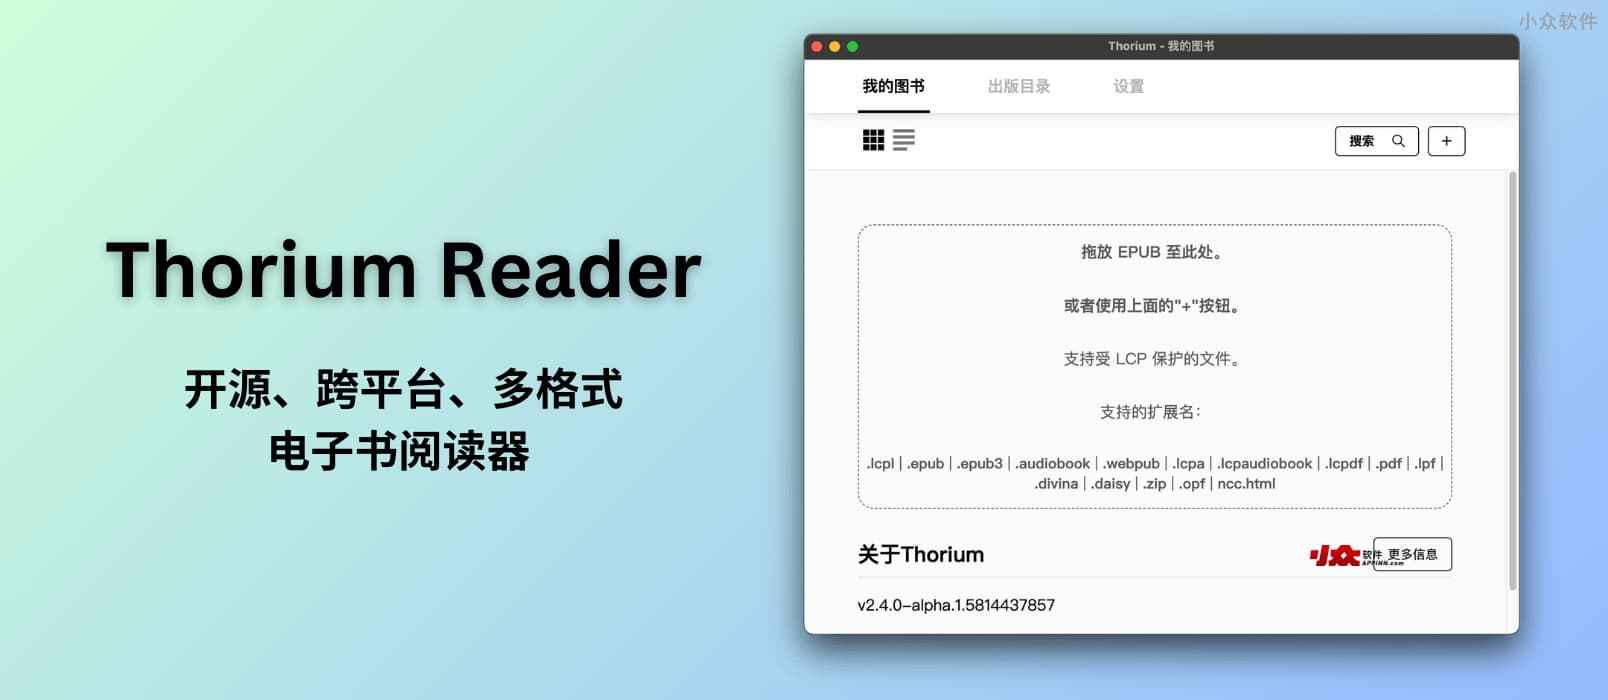 Readium Chrome 插件停止开发 ，Thorium Reader 接替：开源、跨平台、多格式电子书阅读器 